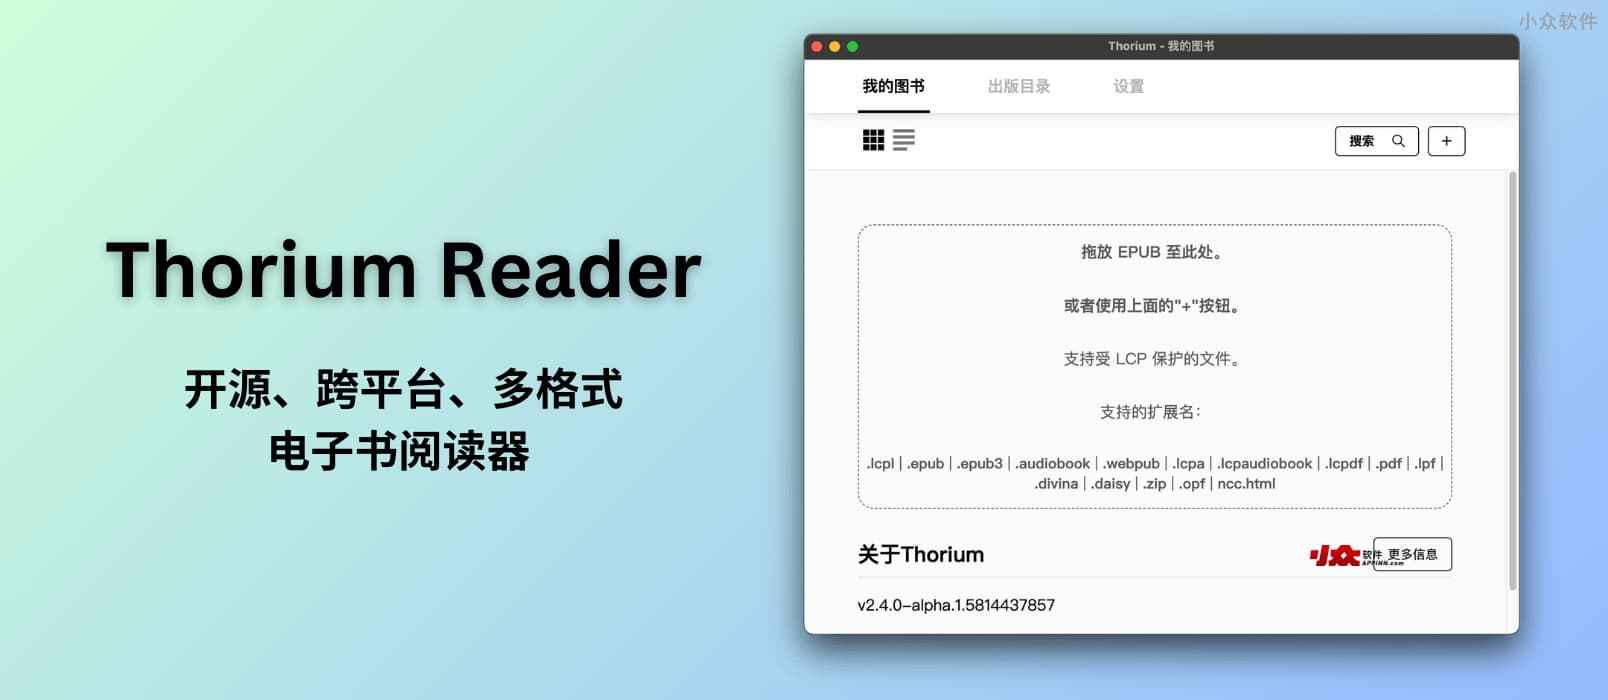 Readium Chrome 插件停止开发 ，Thorium Reader 接替：开源、跨平台、多格式电子书阅读器 